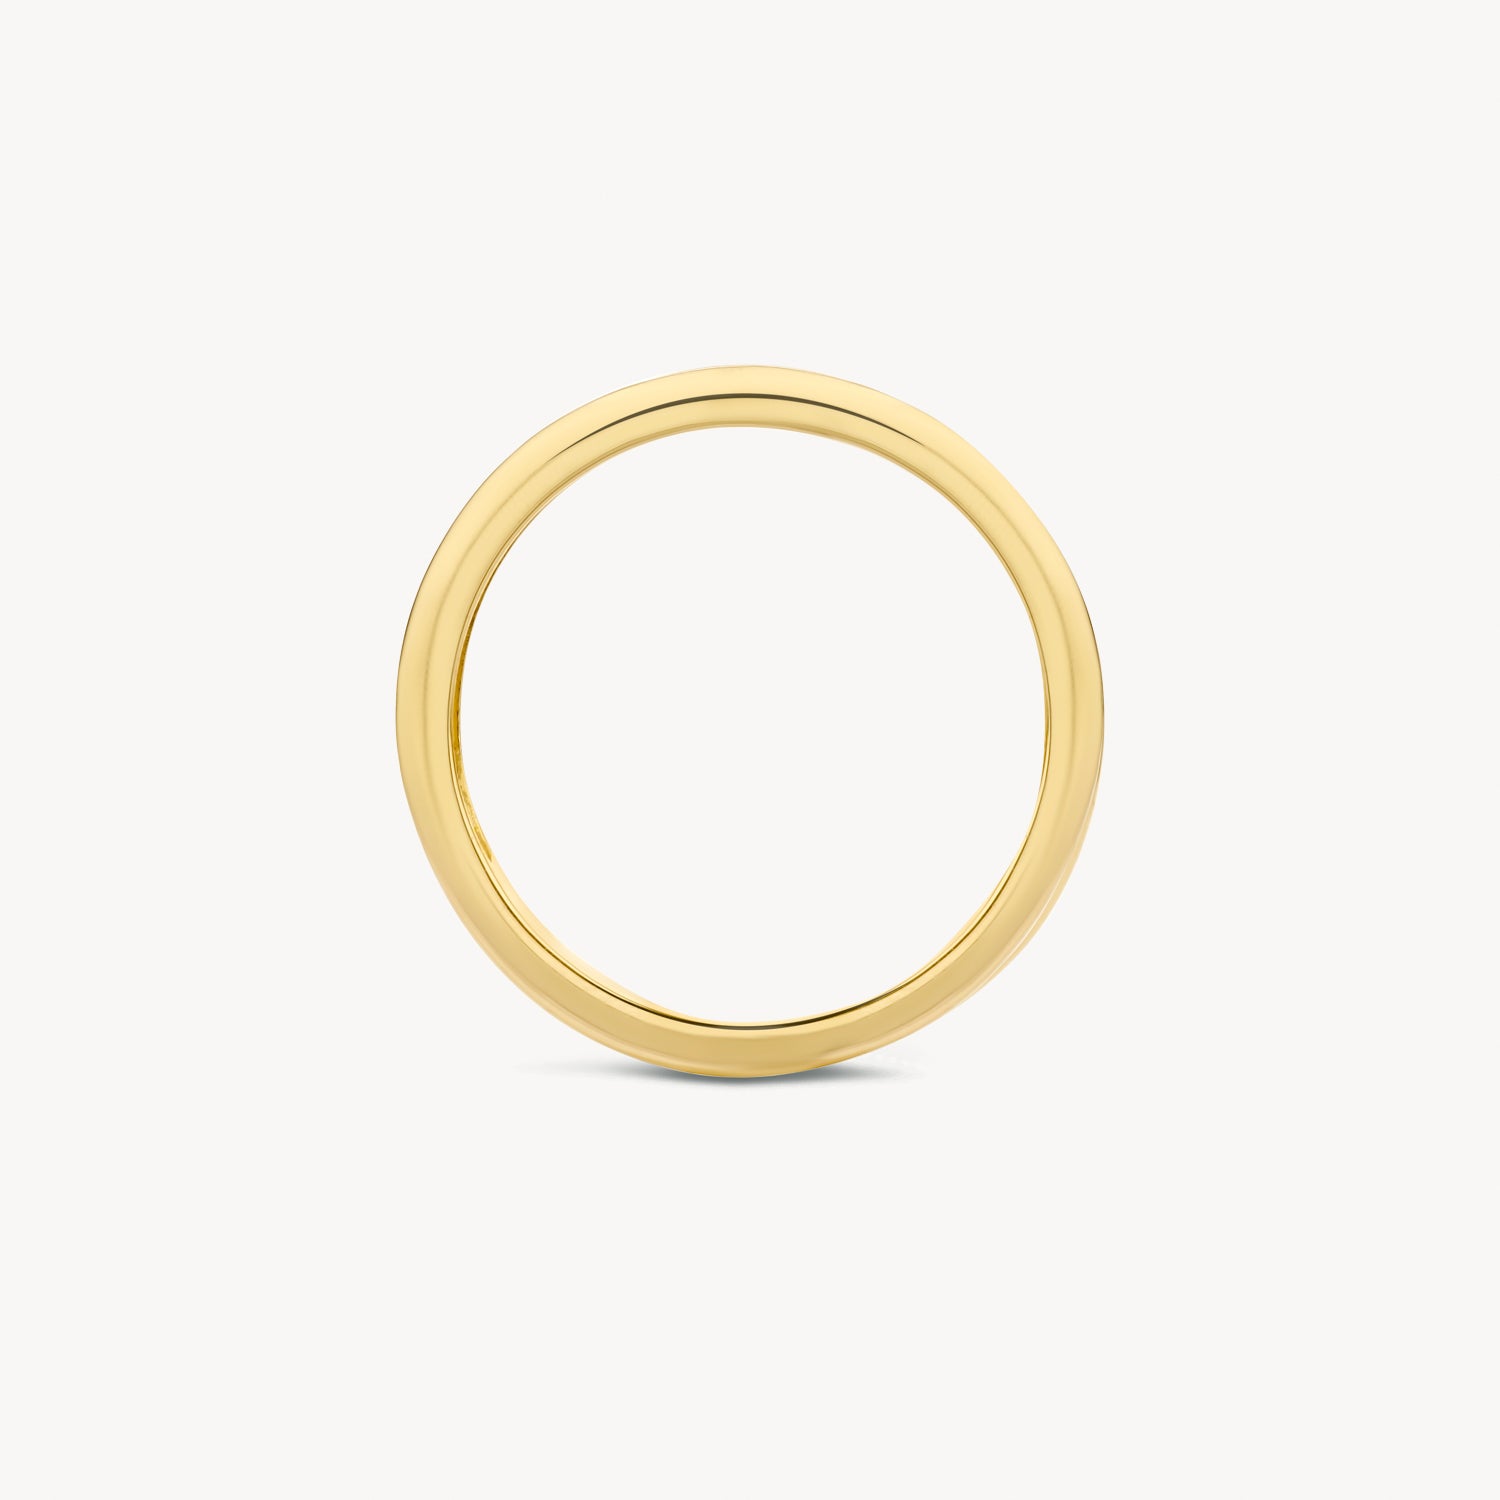 Ring 1607BDI - 585er Gelb- und Weißgold mit Diamant